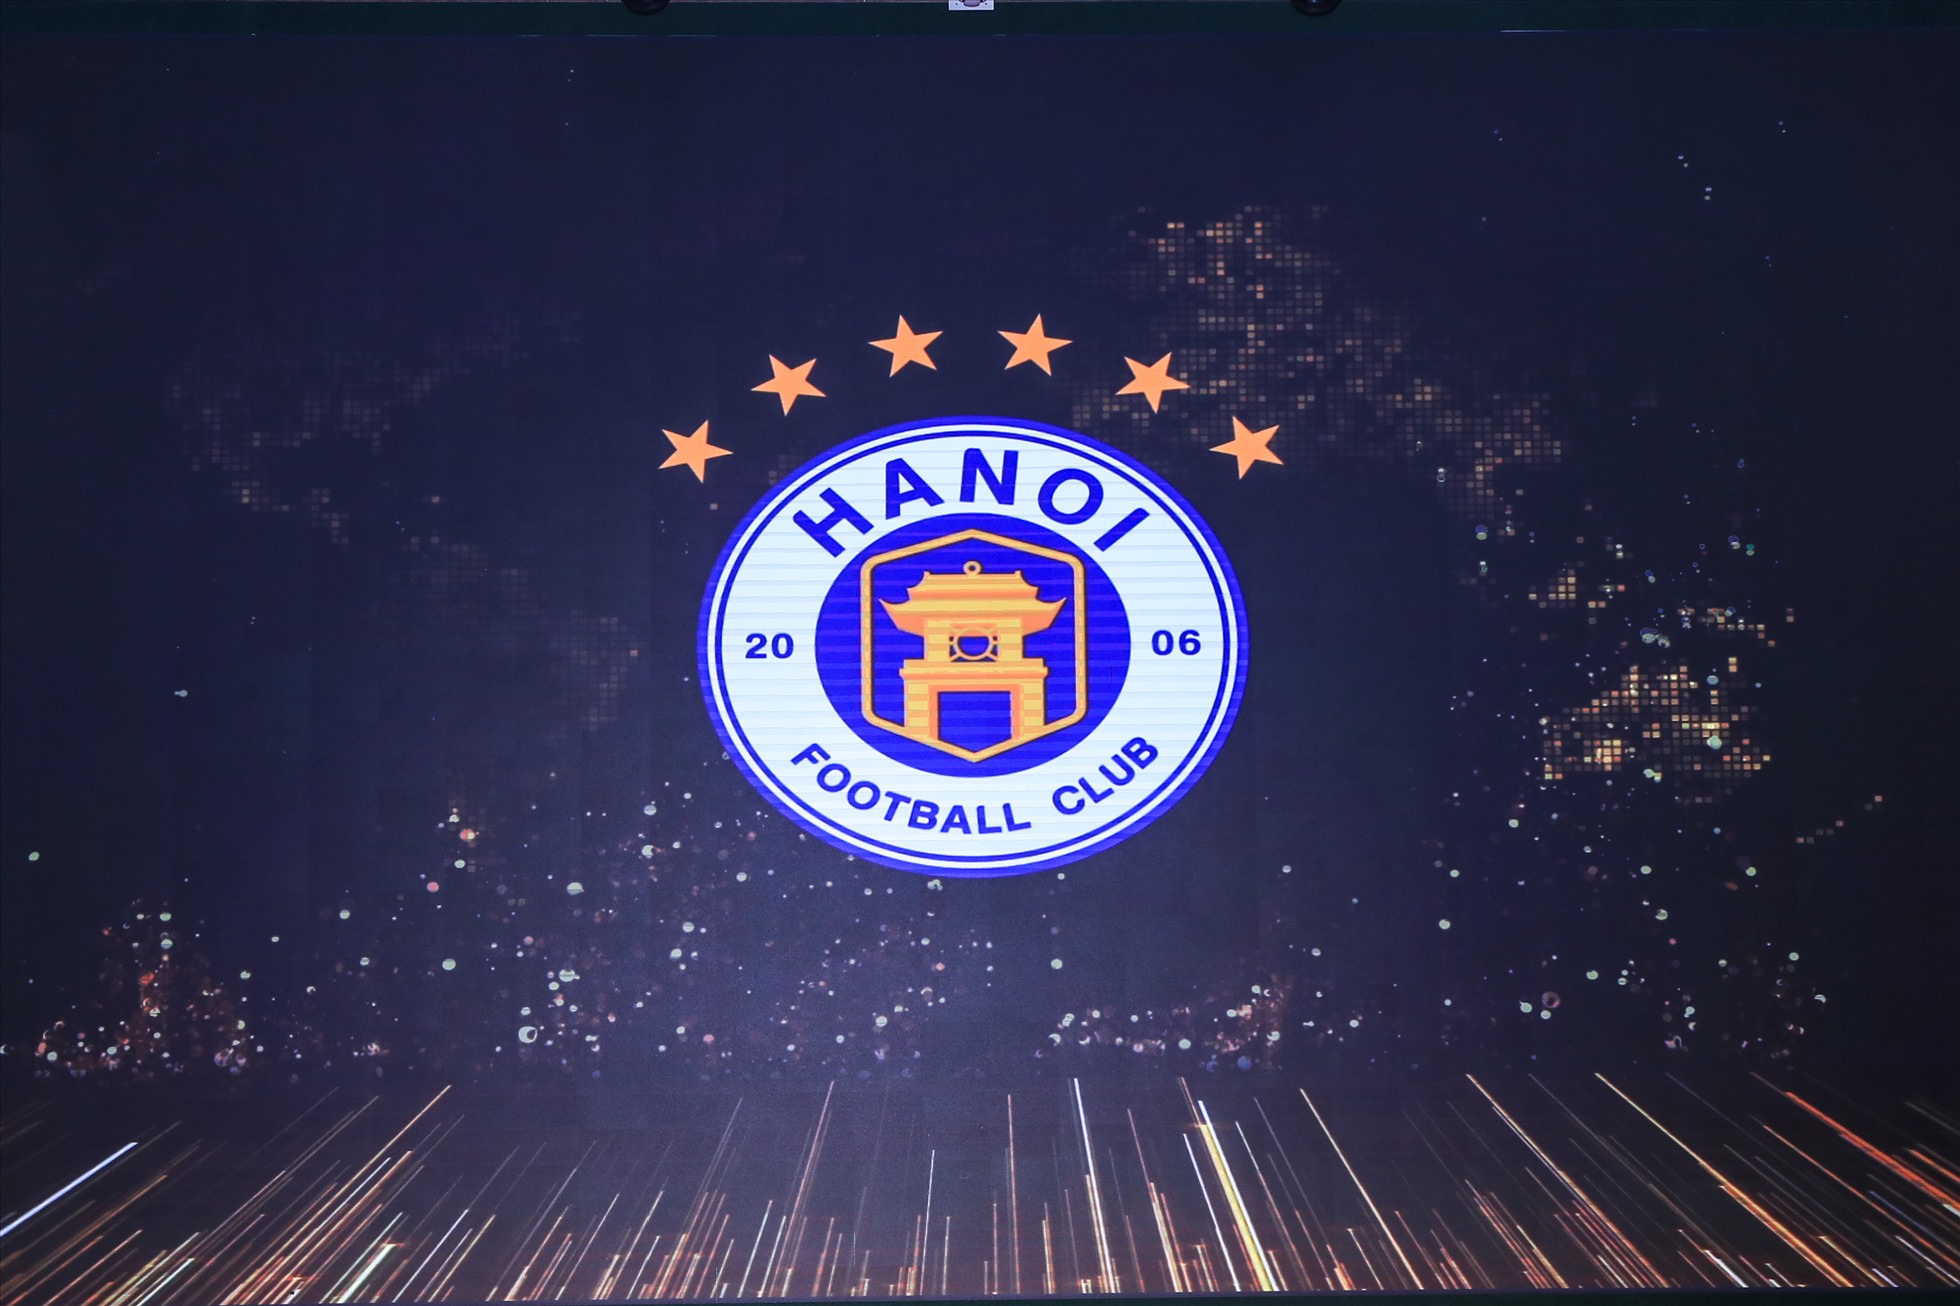 Đây cũng là buổi lễ mà Hà Nội FC công bố giao diện logo mới với 6 sao tượng trưng cho 6 chức vô địch V.League từ khi thành lập năm 2006 tới nay 2022.